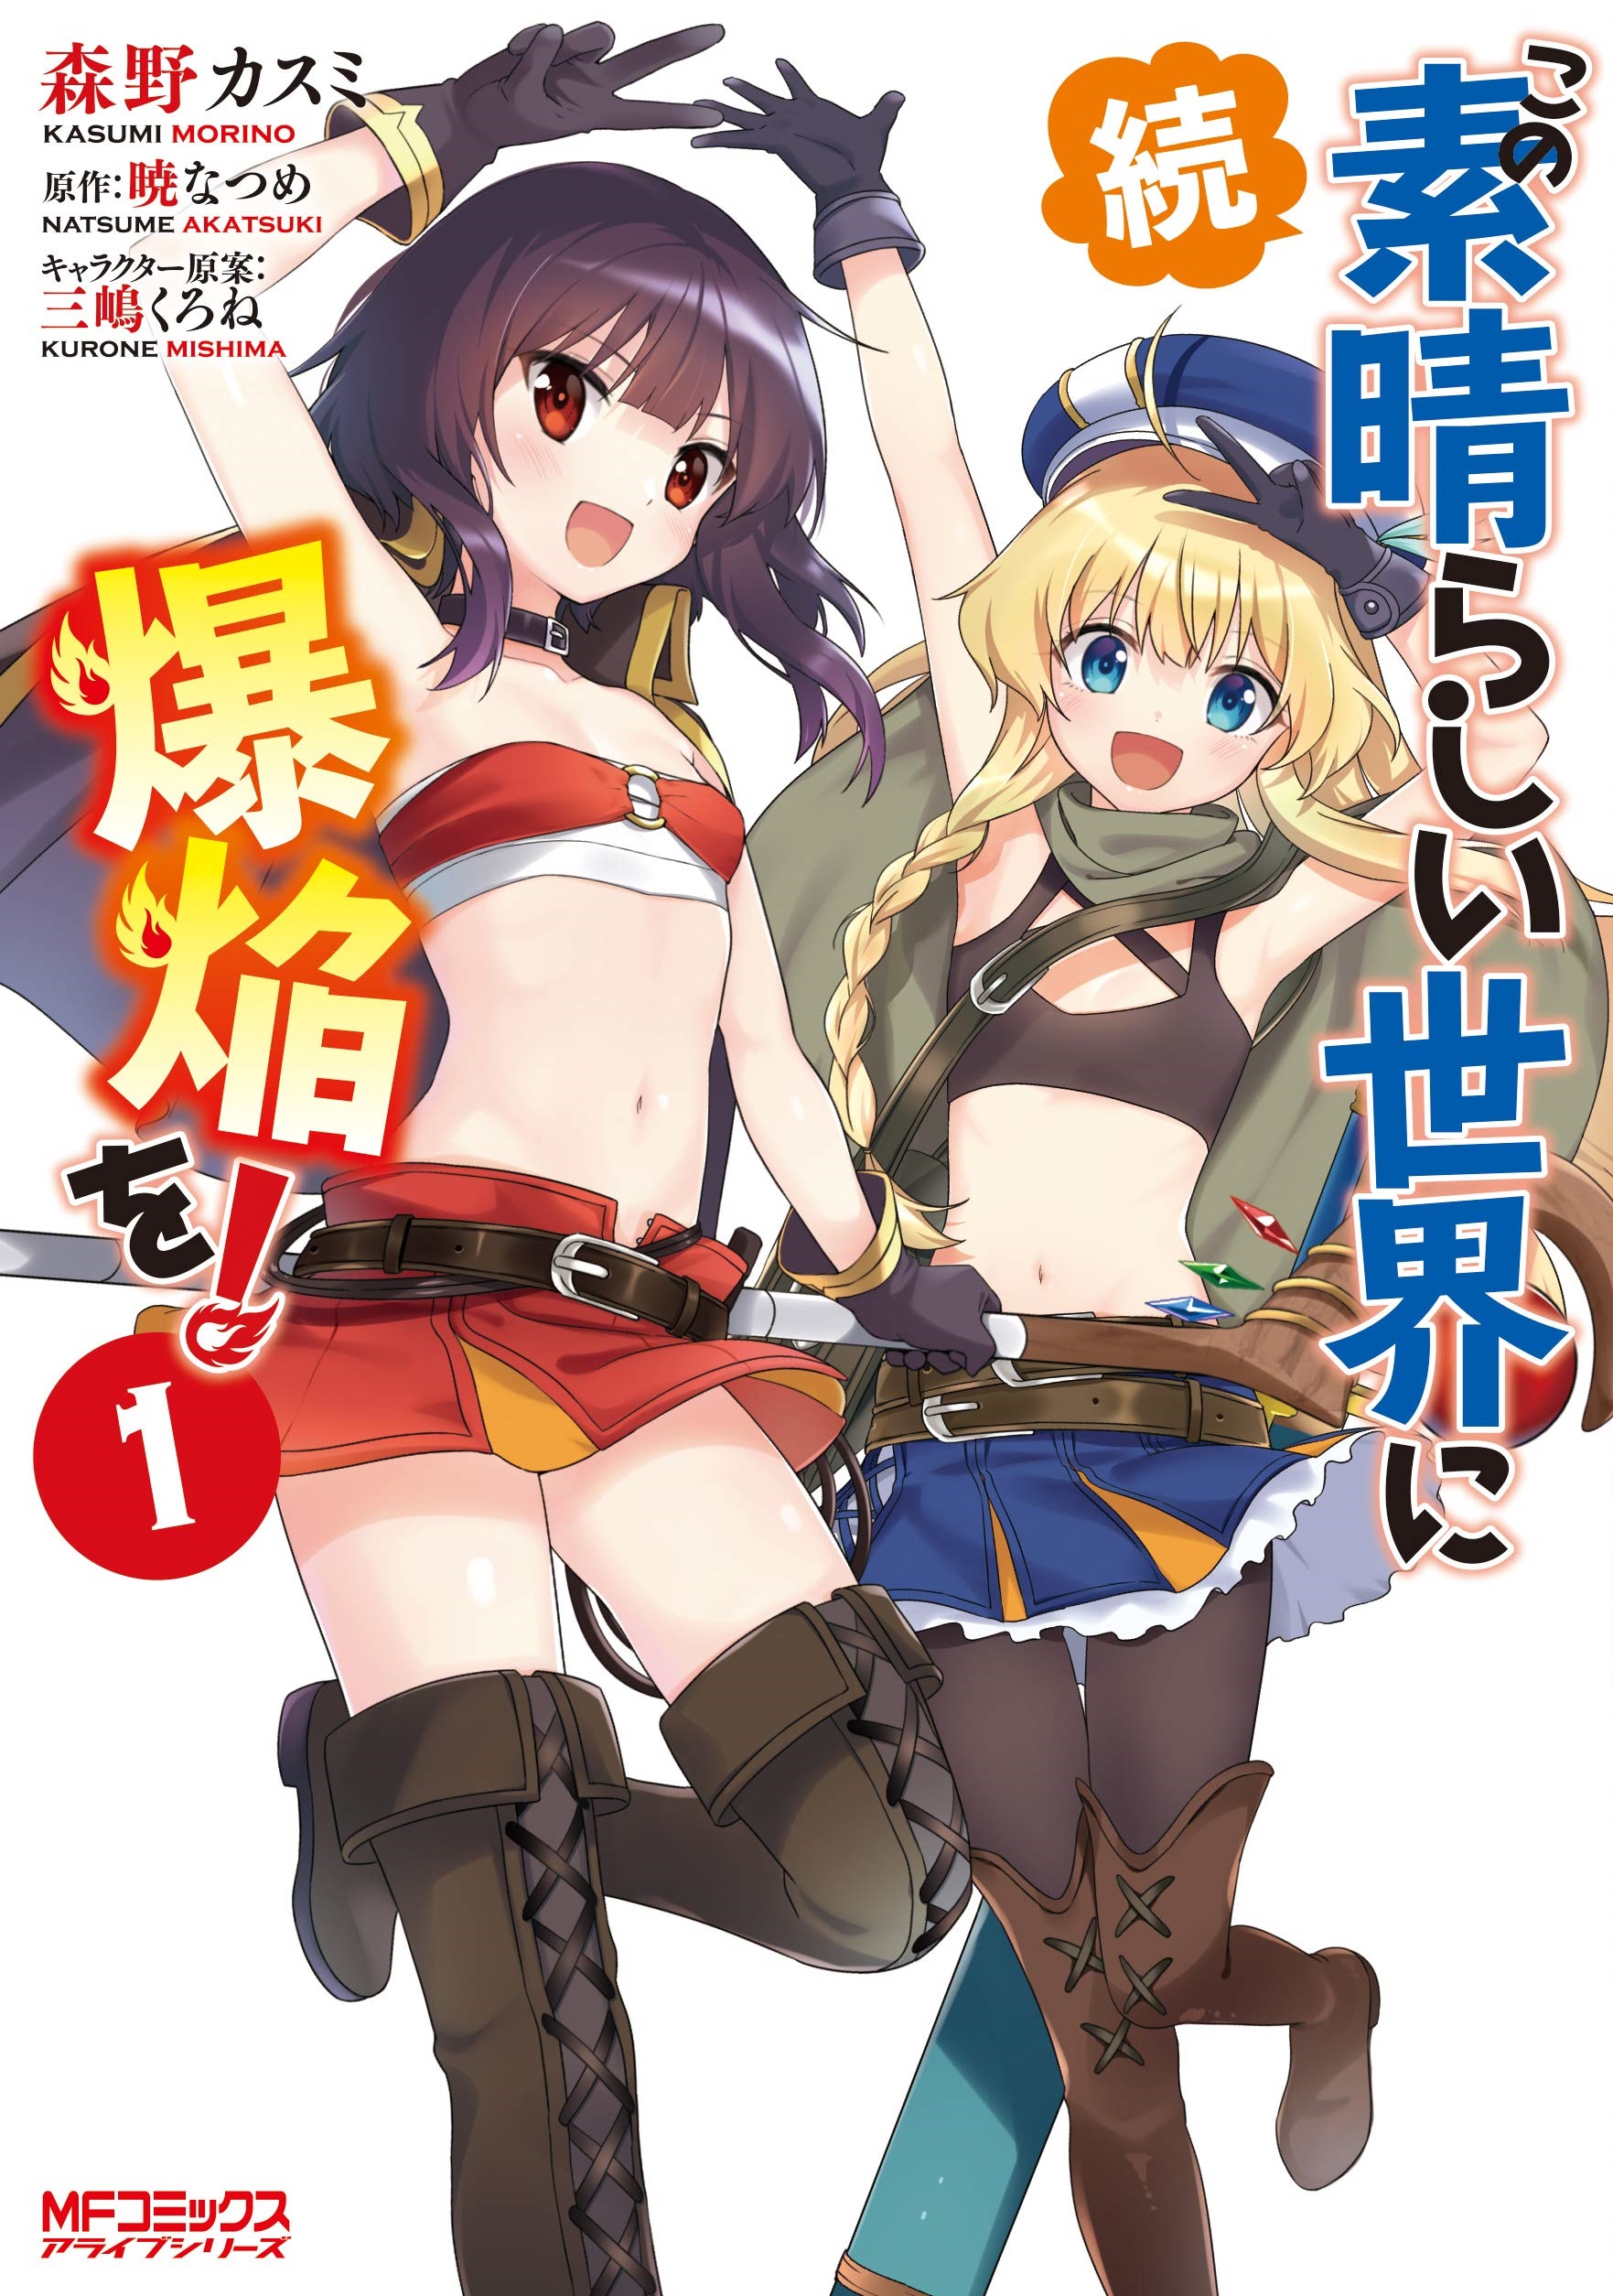 KonoSuba Spin off manga: Zoku Kono Subarashii Sekai ni Bakuen Wo! 1-4  Complete